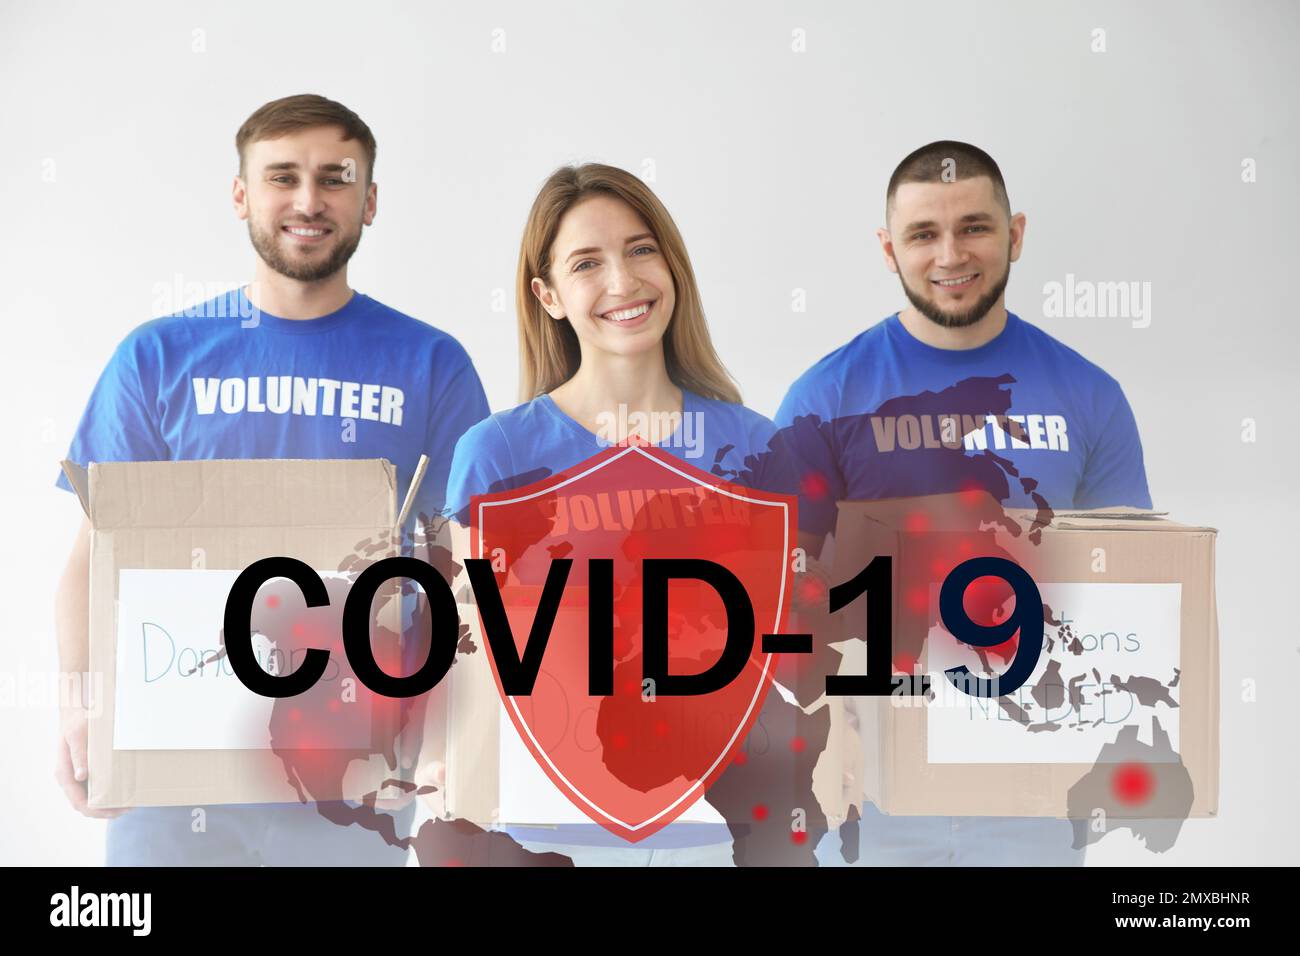 Les bénévoles s'unissent pour aider pendant l'épidémie de COVID-19. Groupe de personnes avec des dons sur fond clair, bouclier et illustrations de la carte du monde Banque D'Images